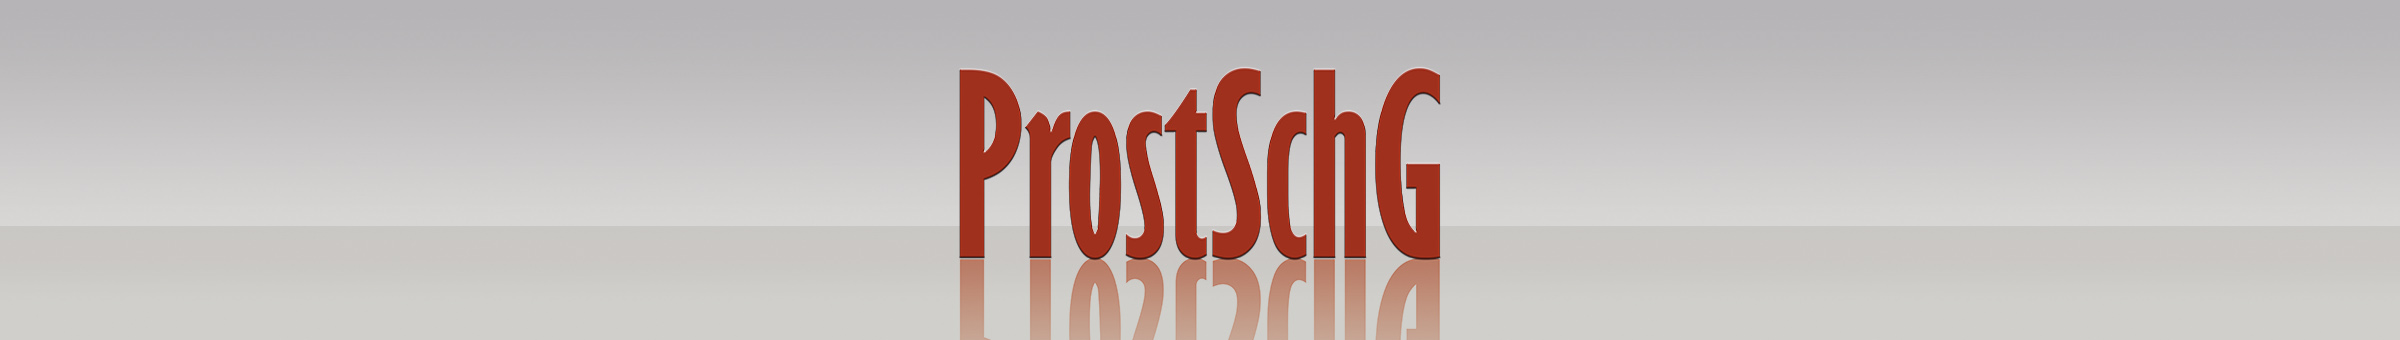 Schriftzug "ProstSchG" vor neutralem Hintergrund